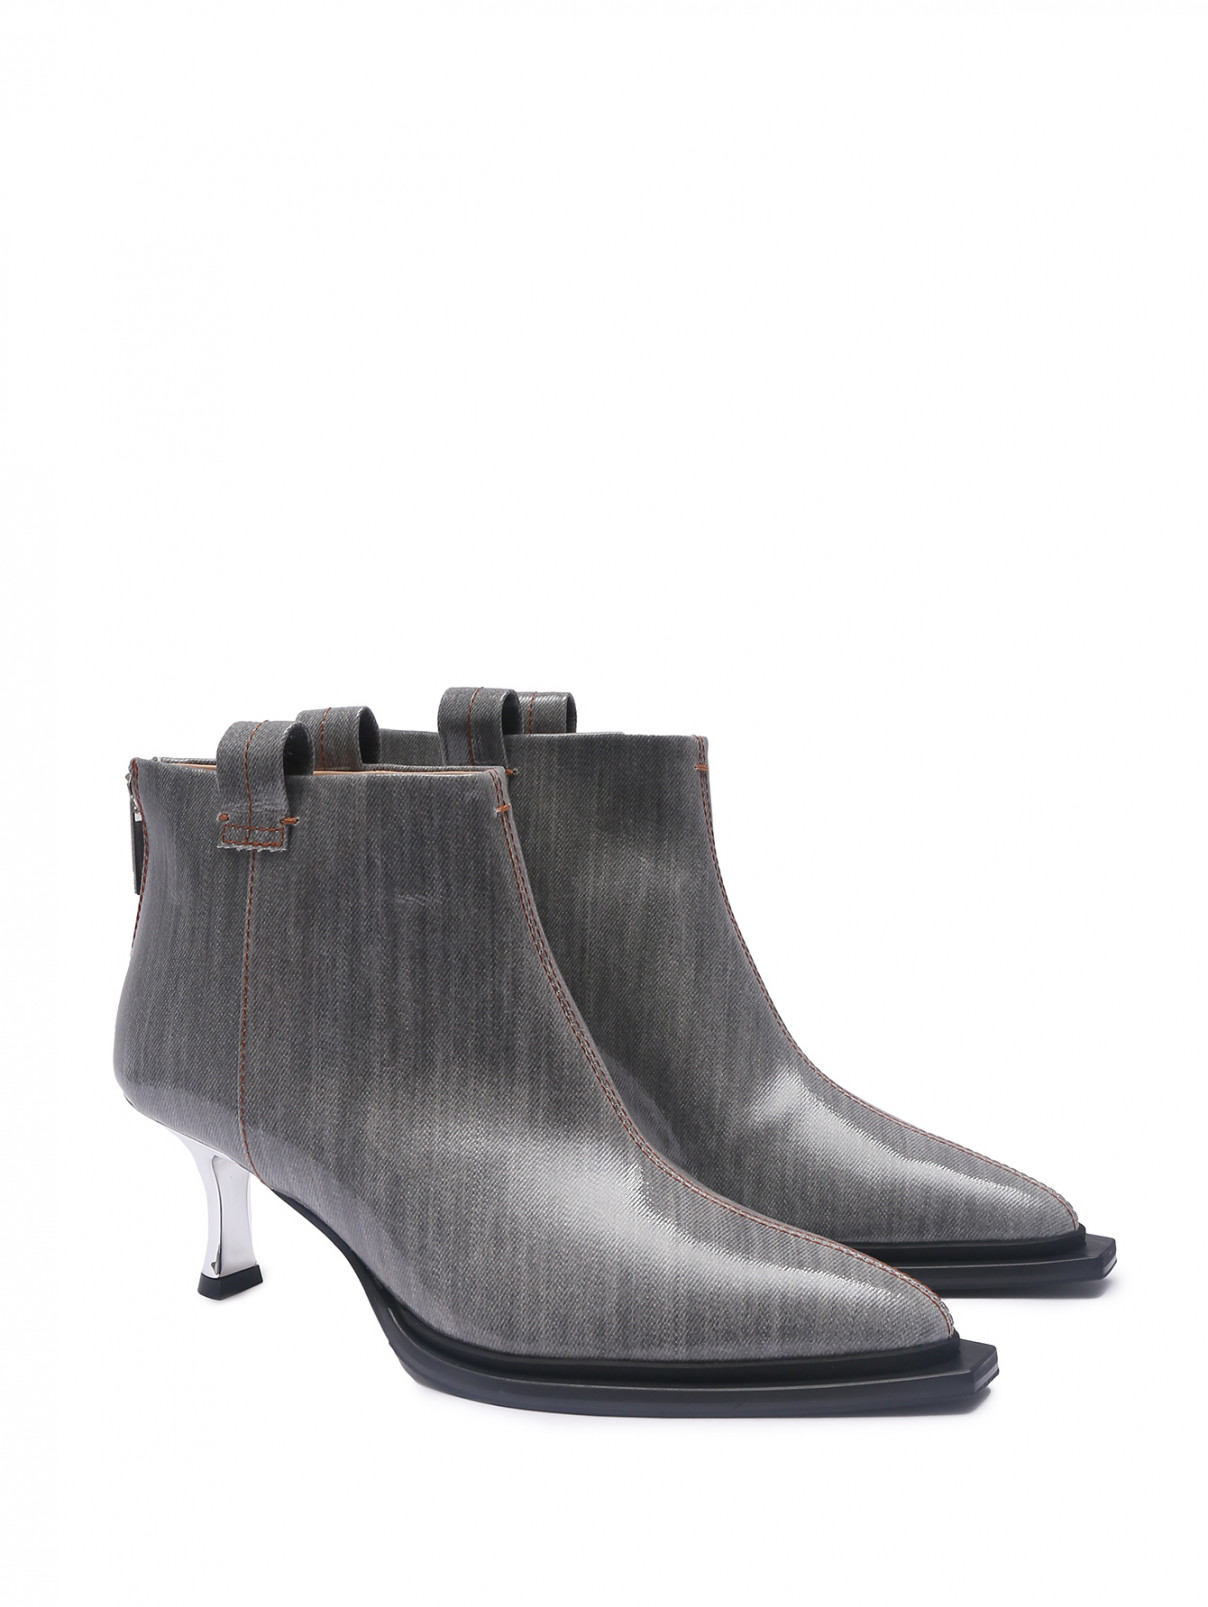 Ботильоны на металлическом каблуке Marina Rinaldi  –  Общий вид  – Цвет:  Серый